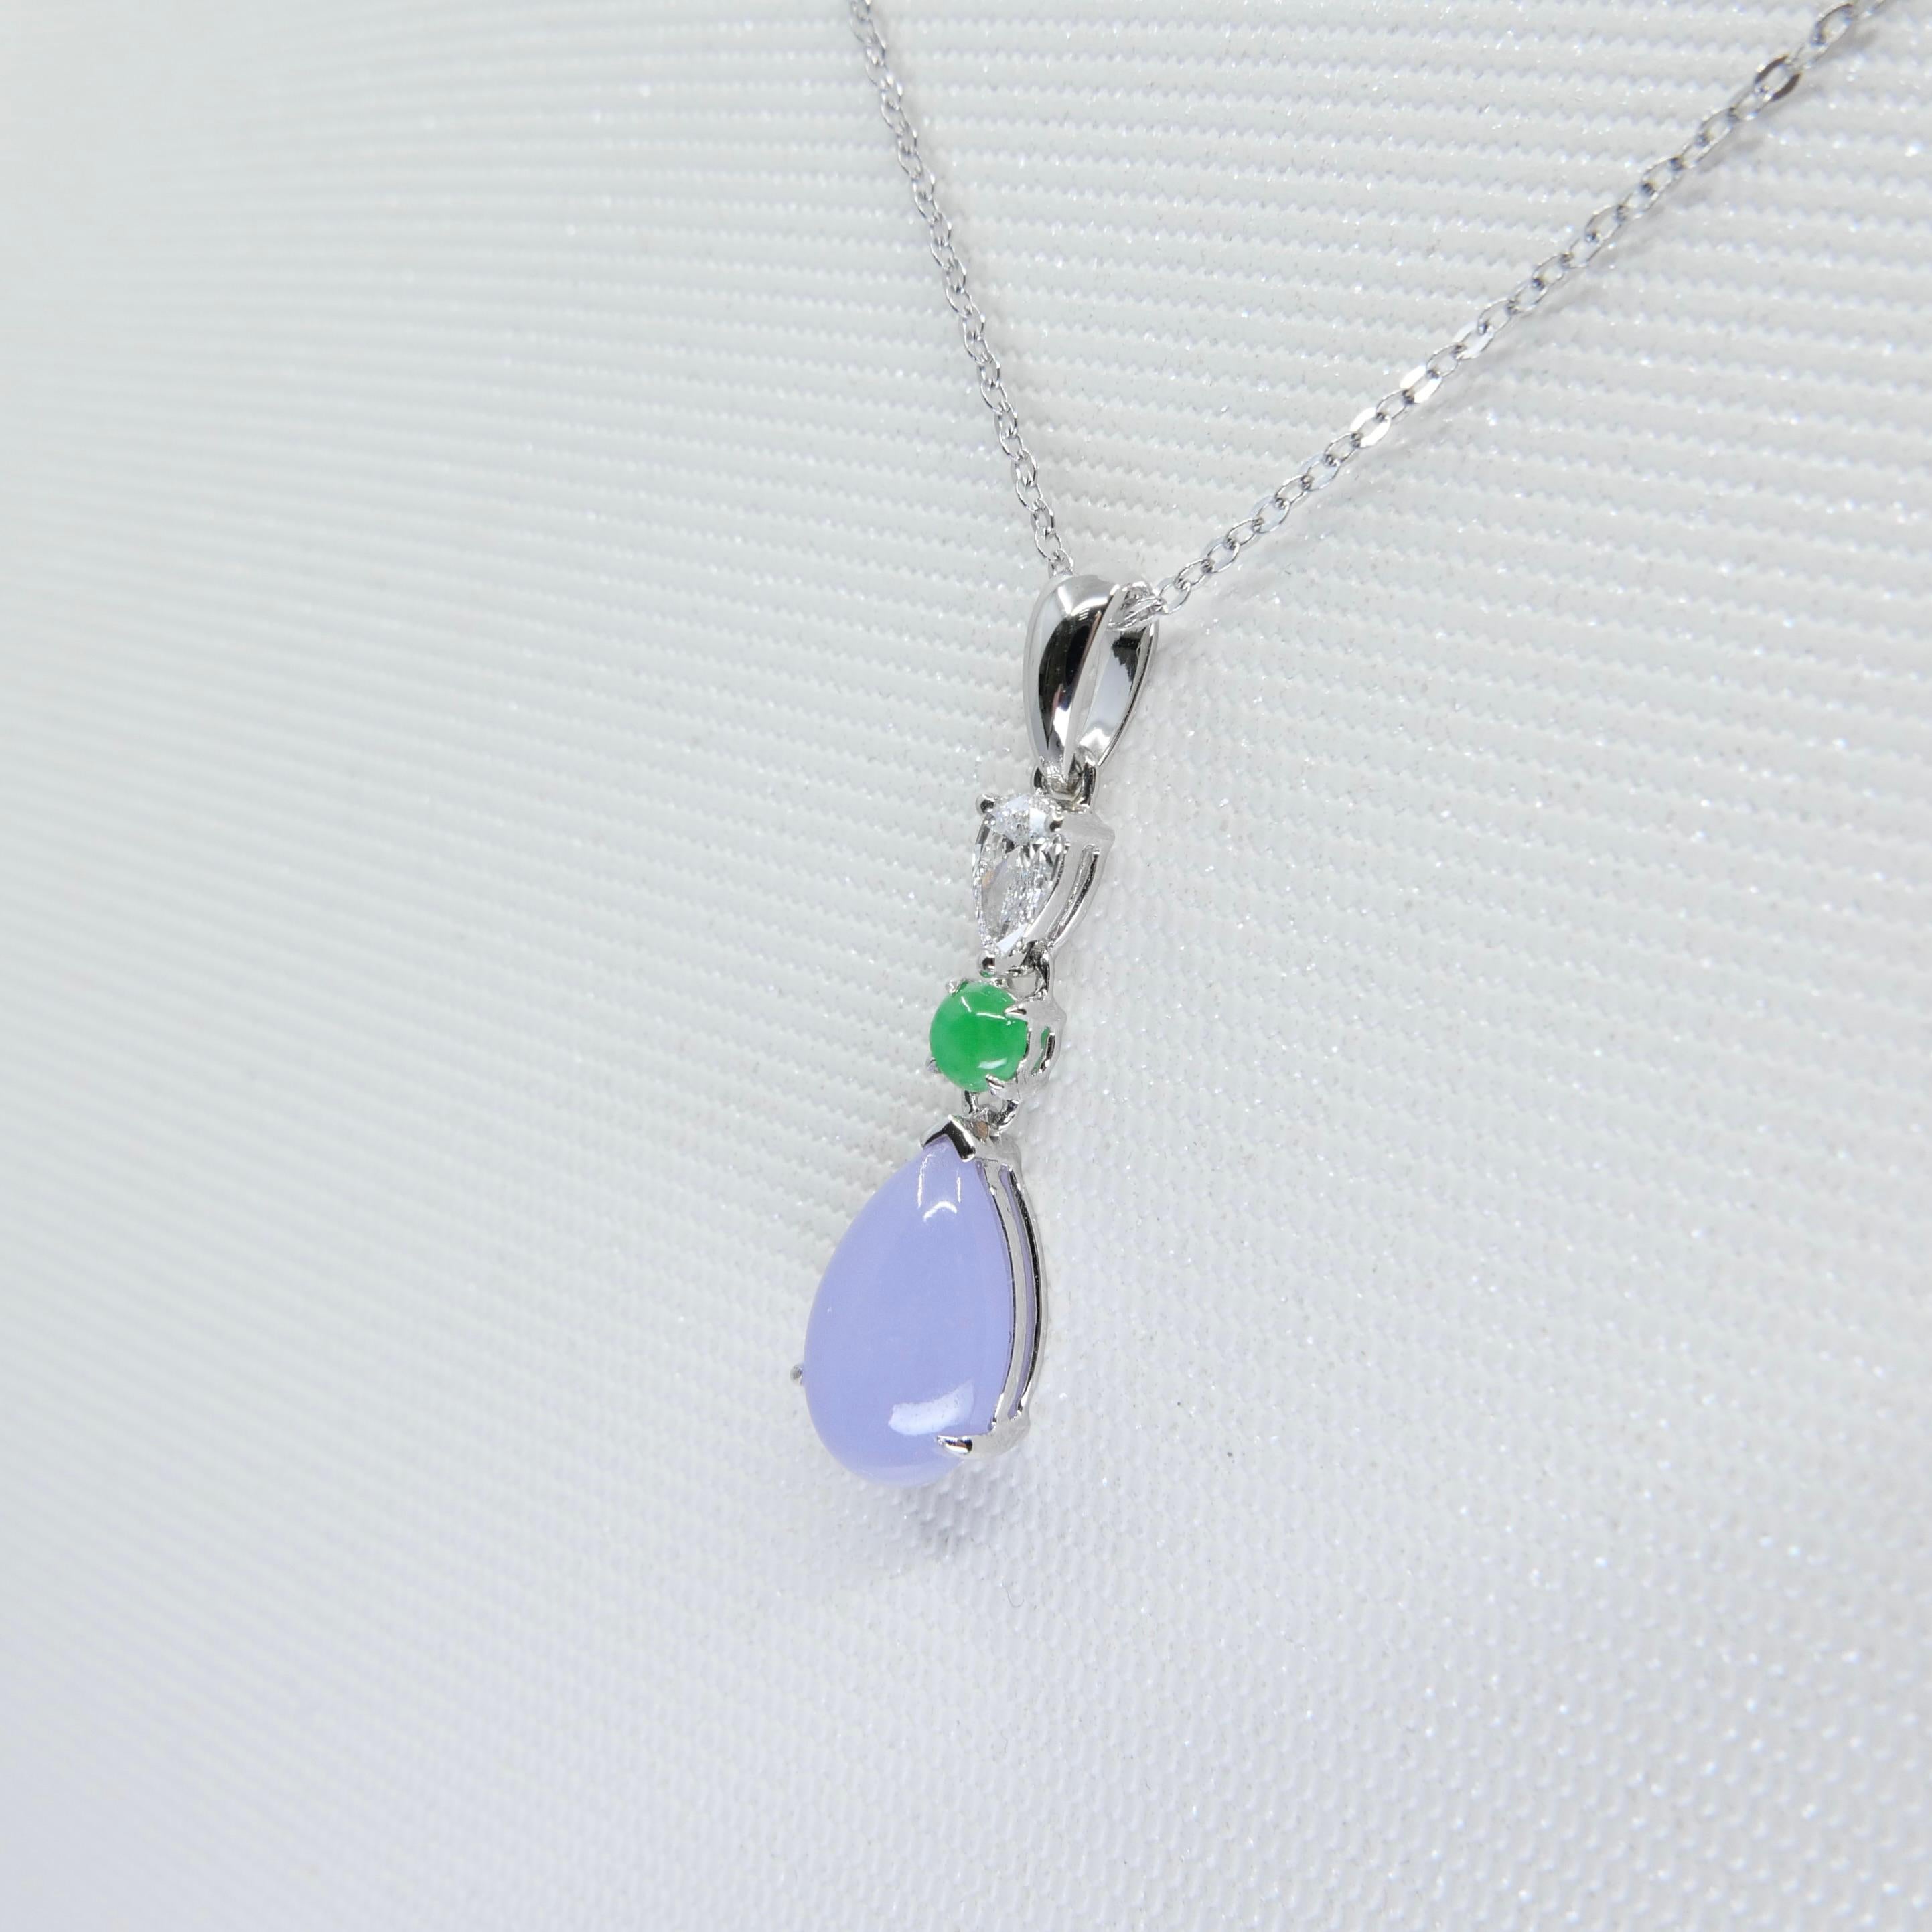 Certified 1.95 Carats Lavender Jade & Pear Cut Diamond Drop Pendant Necklace For Sale 4